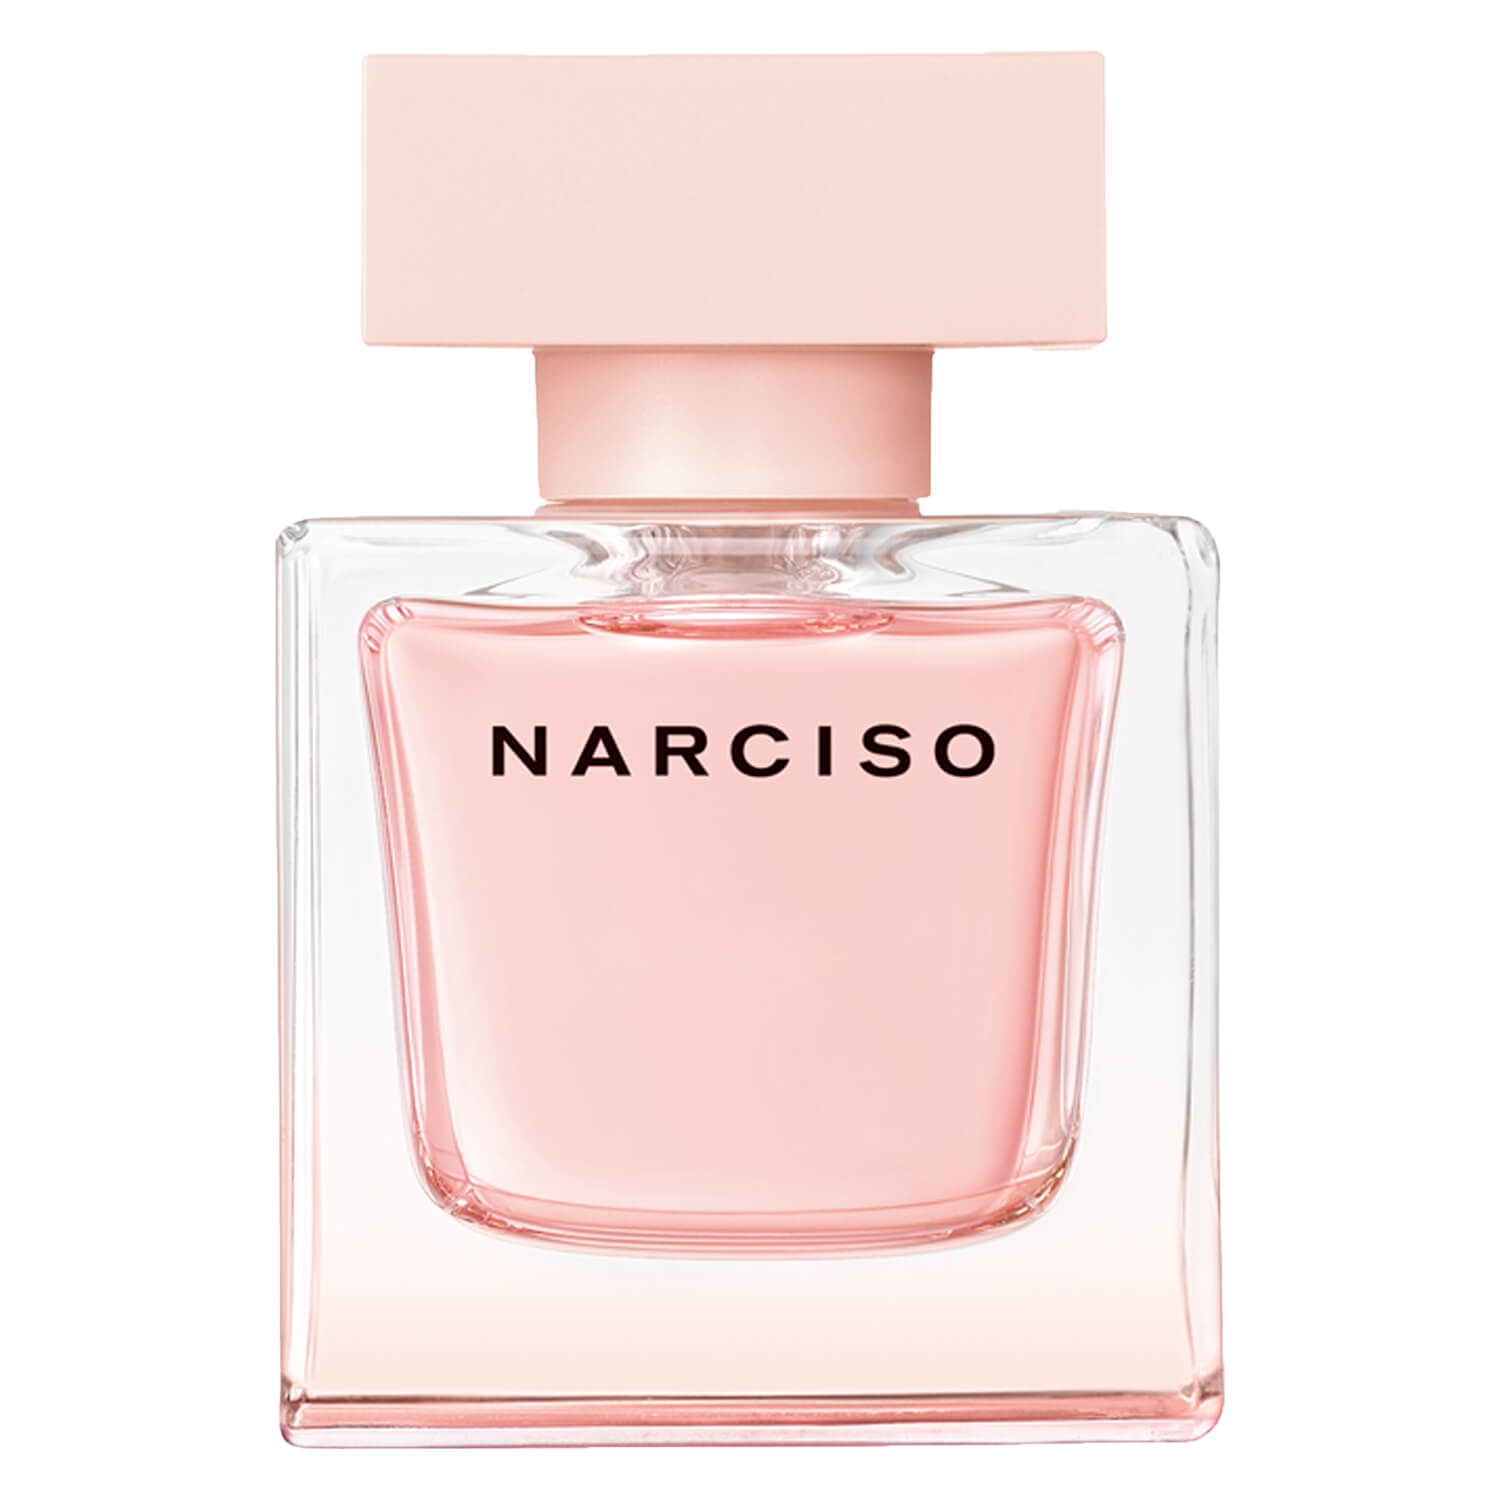 Product image from Narciso – Eau de Parfum Cristal